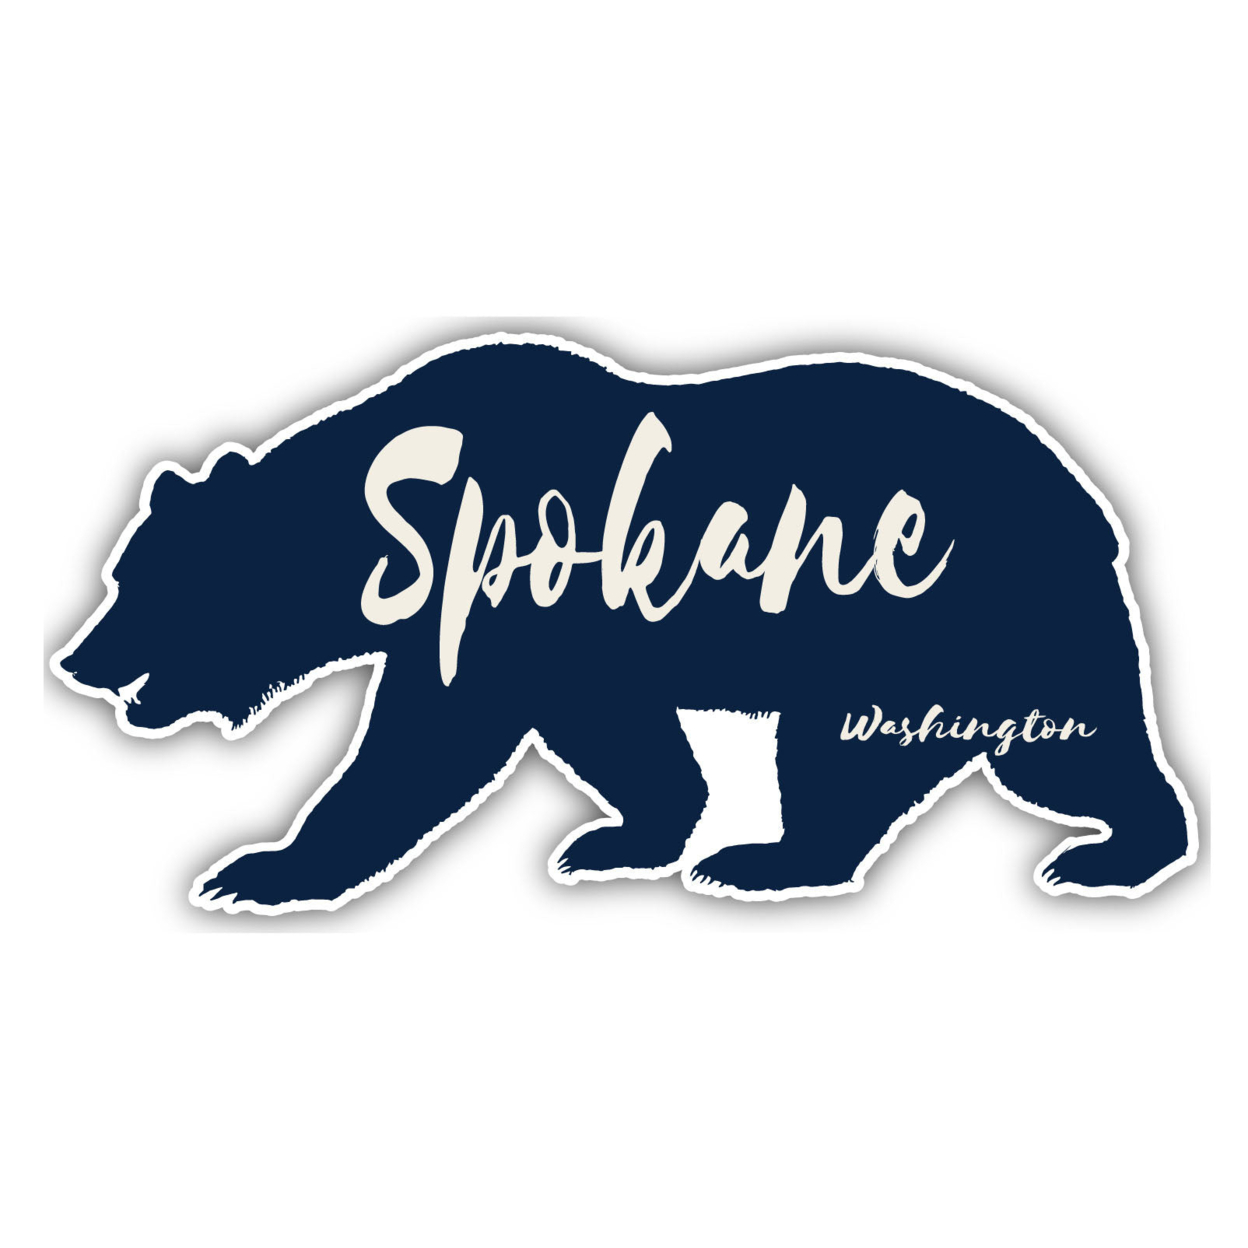 Spokane Washington Souvenir Decorative Stickers (Choose Theme And Size) - Single Unit, 4-Inch, Bear